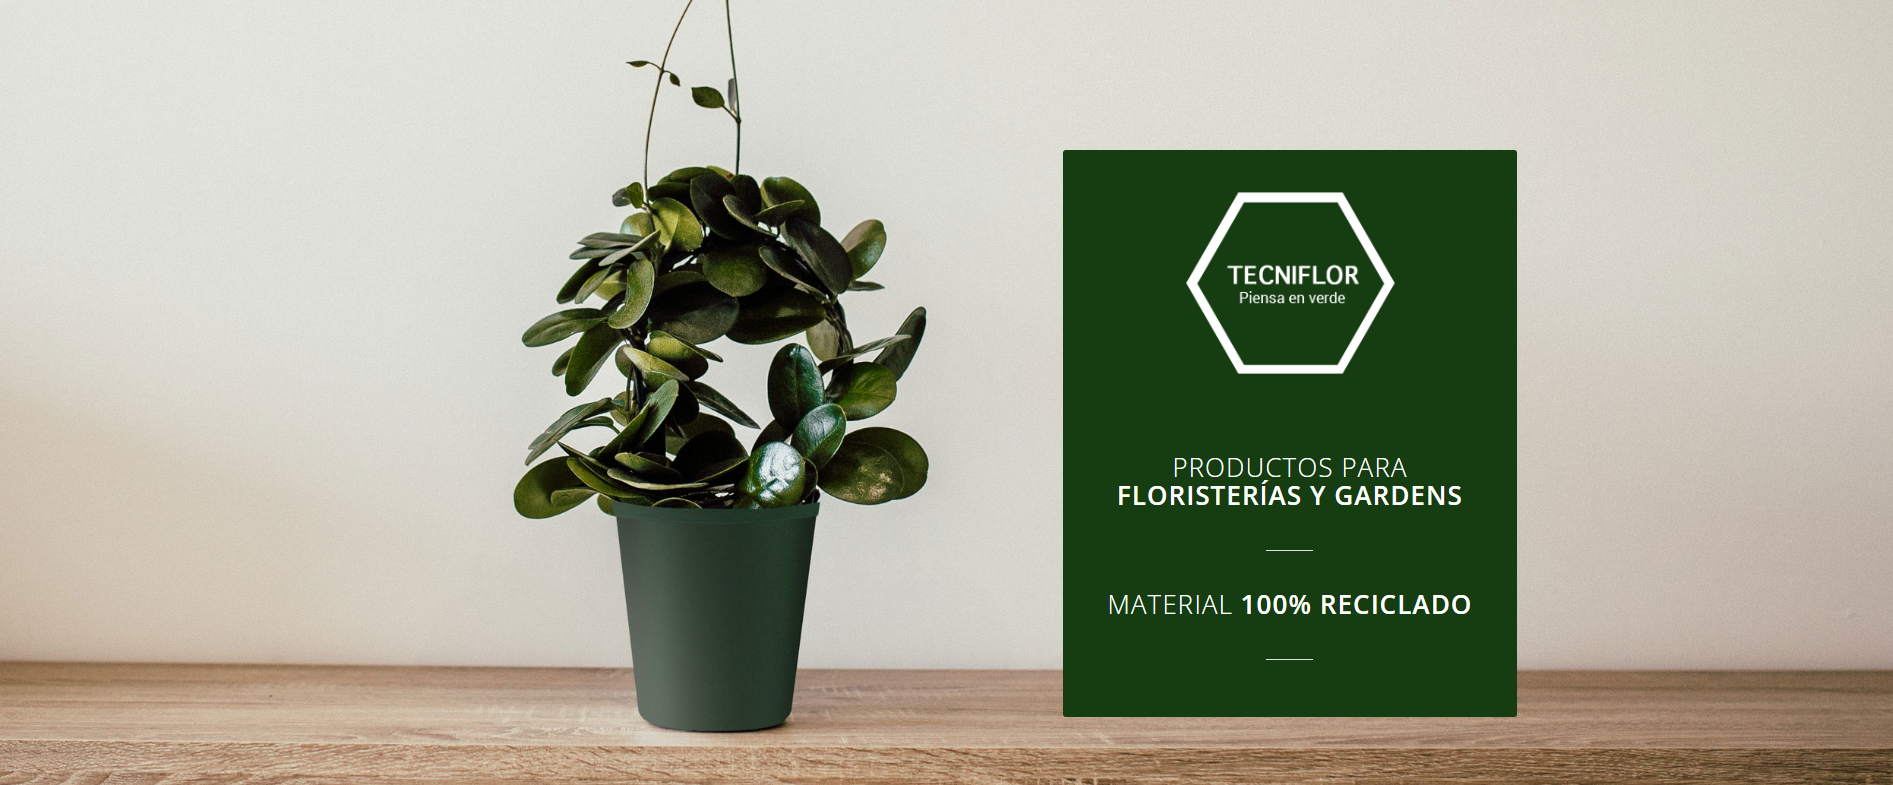 Tecniflor | Productos para floristerías y gardens